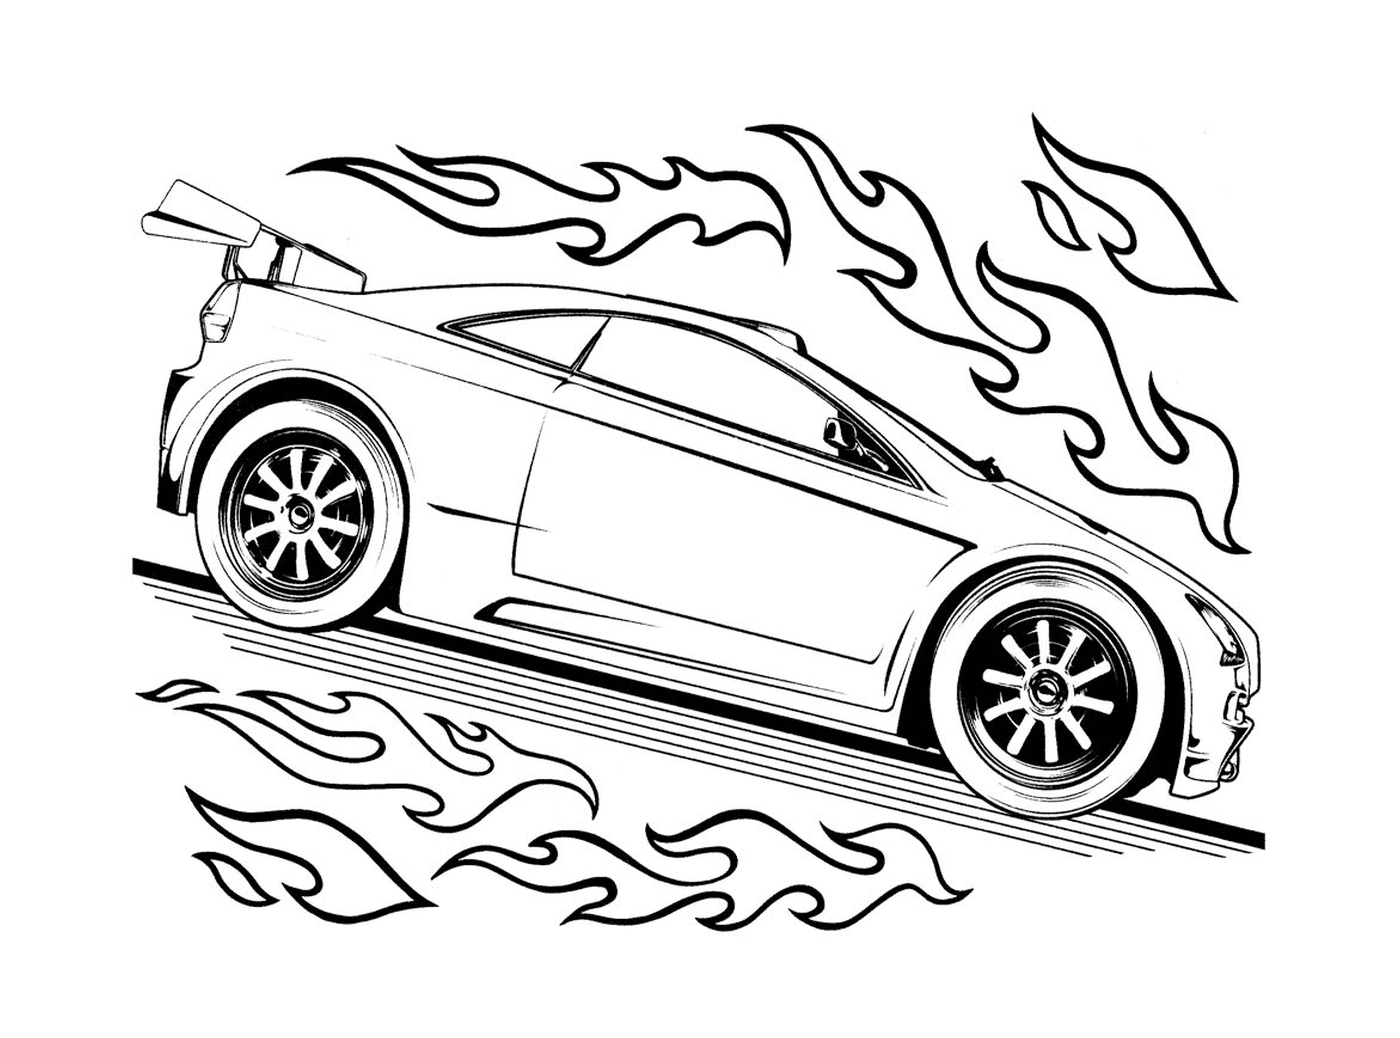  Car in intense fire 